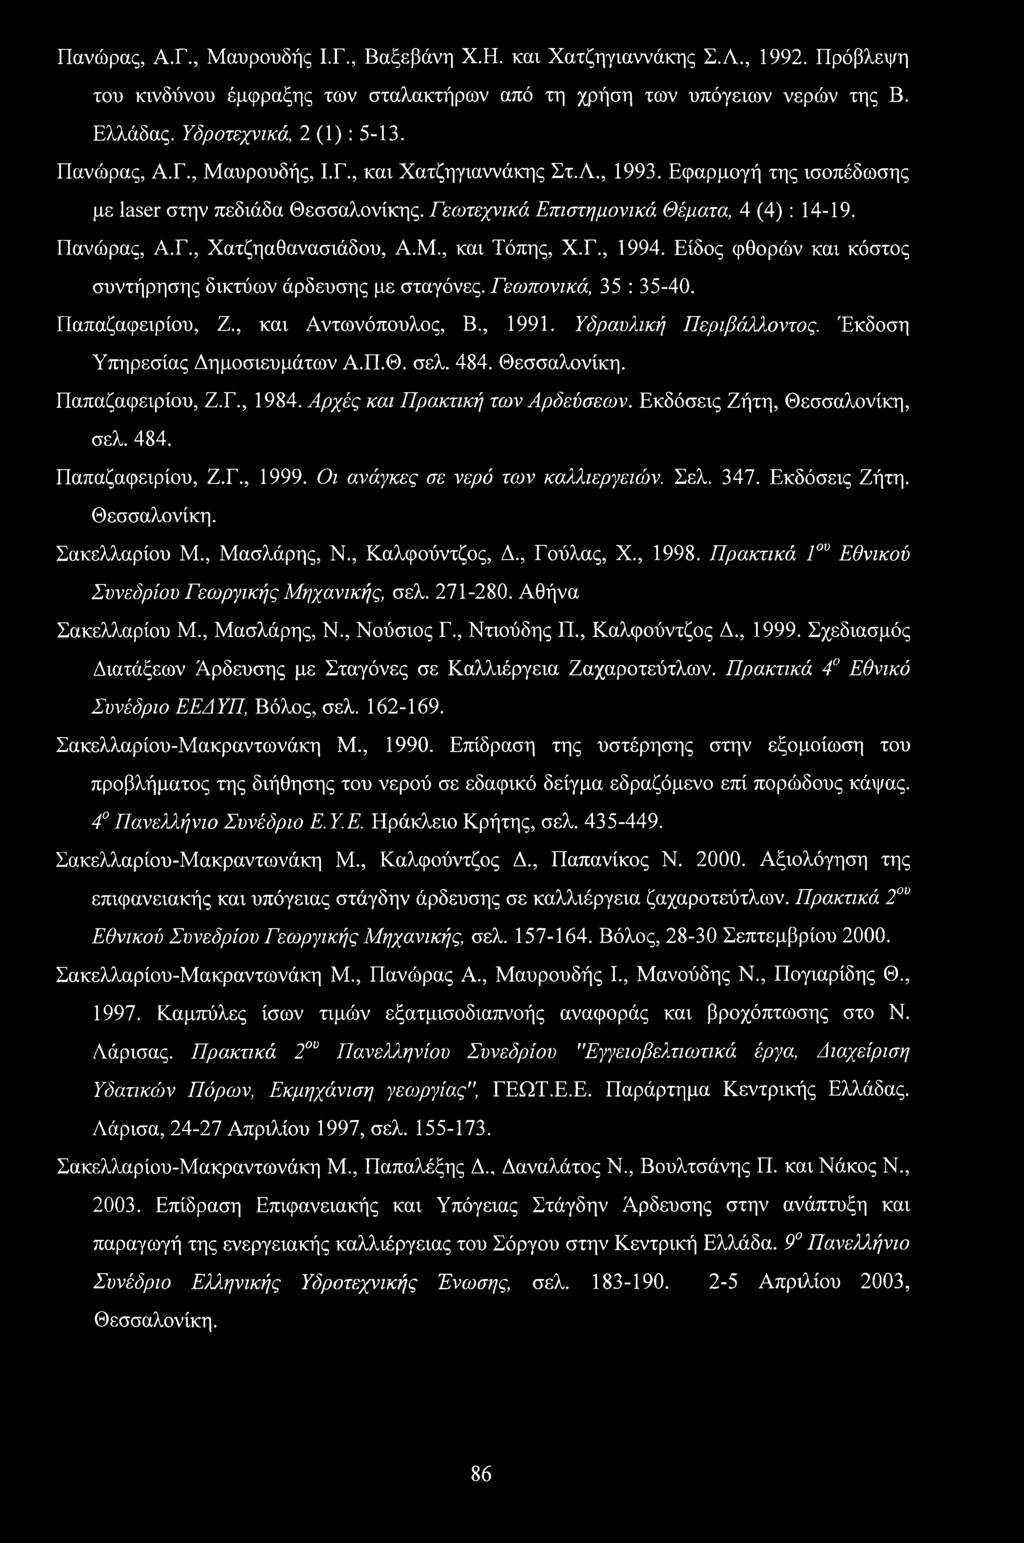 Μ., και Τόπης, Χ.Γ., 1994. Είδος φθορών και κόστος συντήρησης δικτύων άρδευσης με σταγόνες. Γεωπονικά, 35 : 35-40. Παπαζαφειρίου, Ζ., και Αντωνόπουλος, Β., 1991. Υδραυλική Περιβάλλοντος.